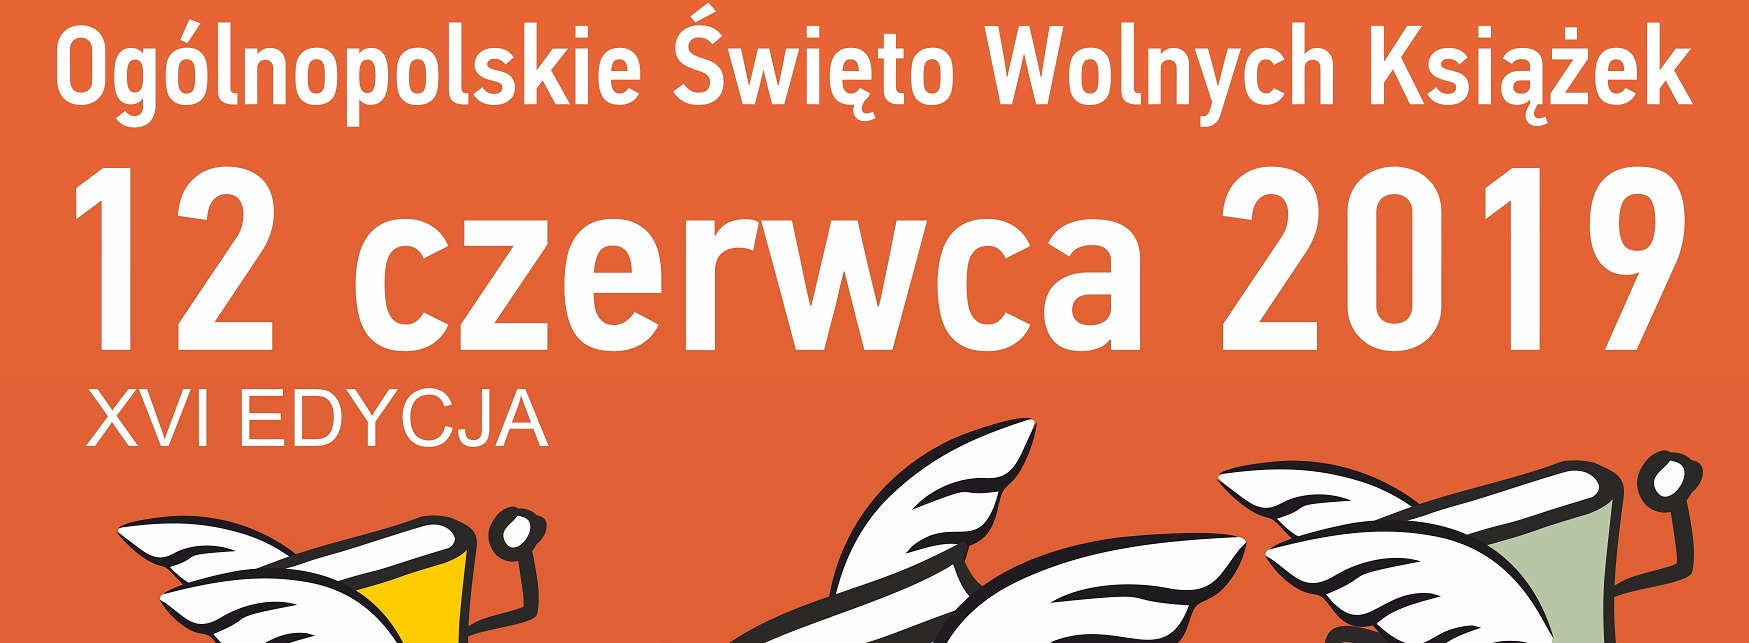 Ogólnopolskie Święto Wolnych Książek 2019